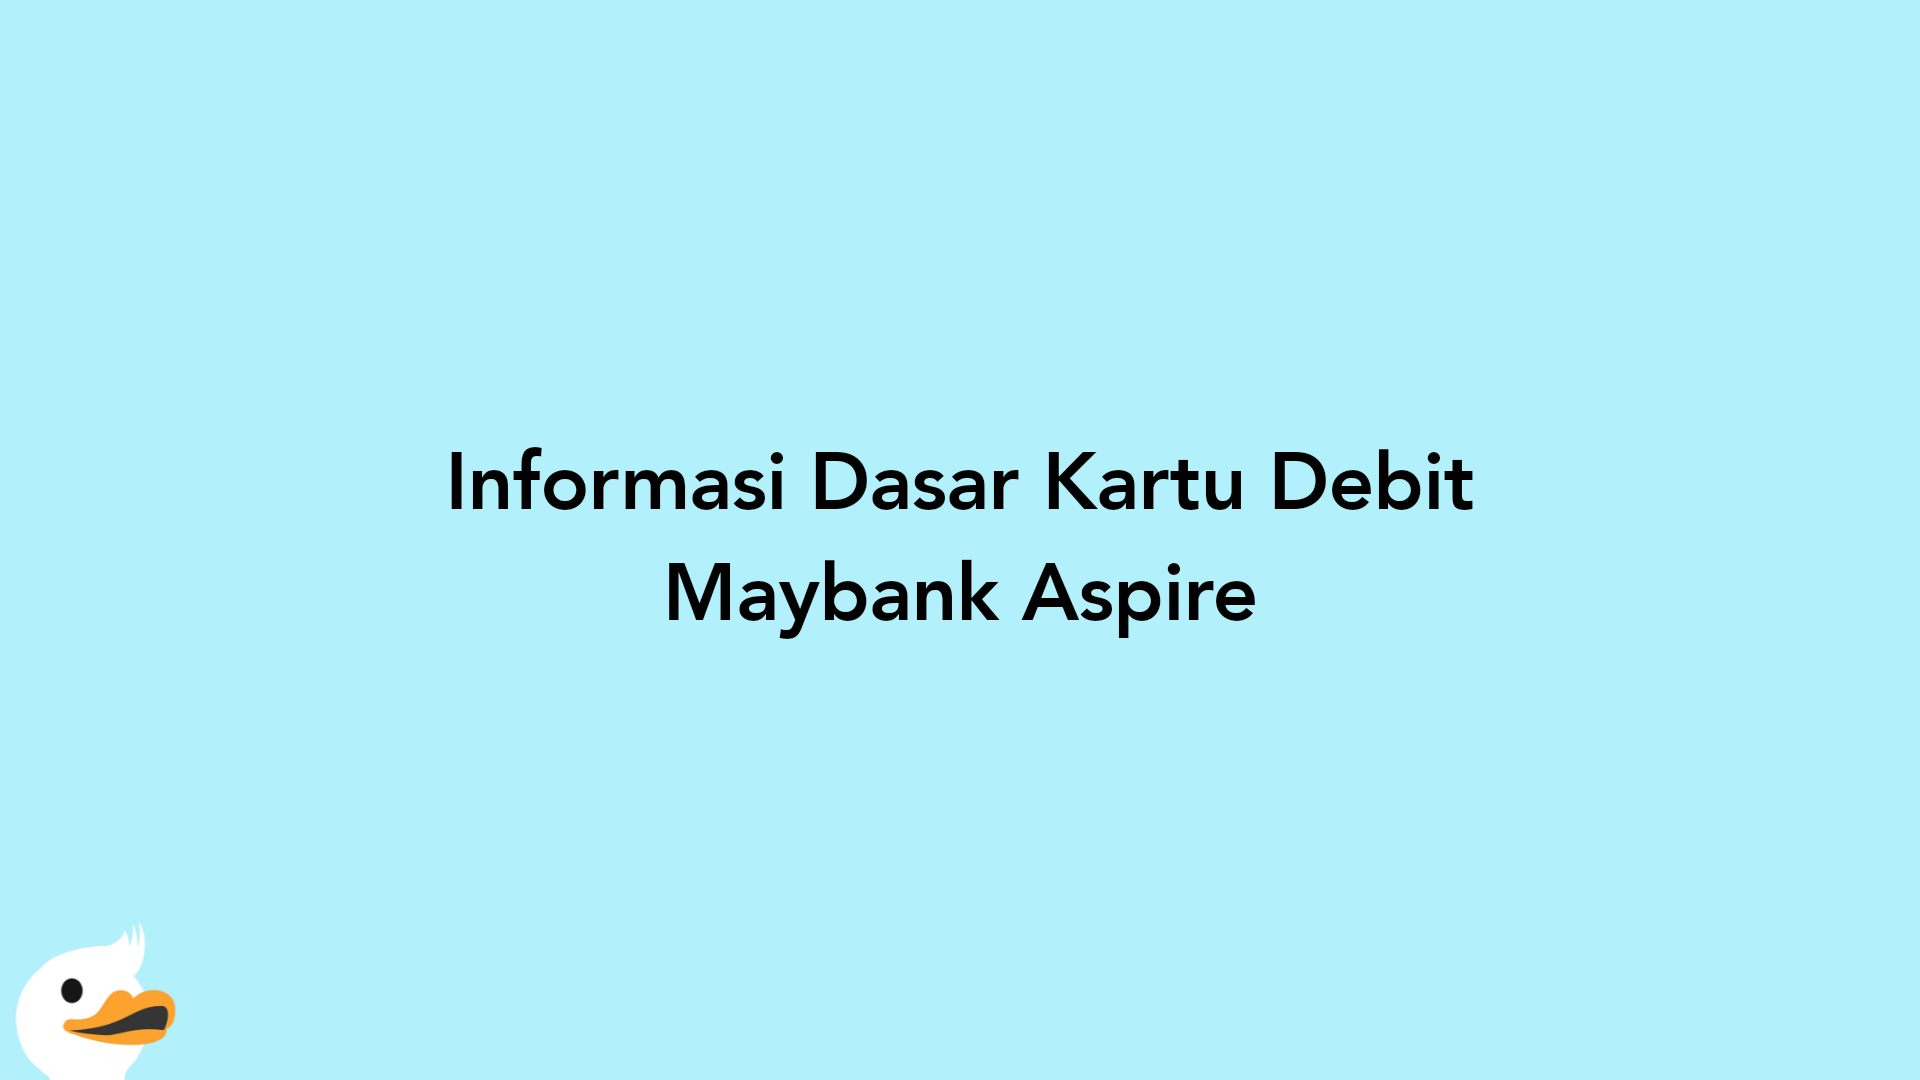 Informasi Dasar Kartu Debit Maybank Aspire